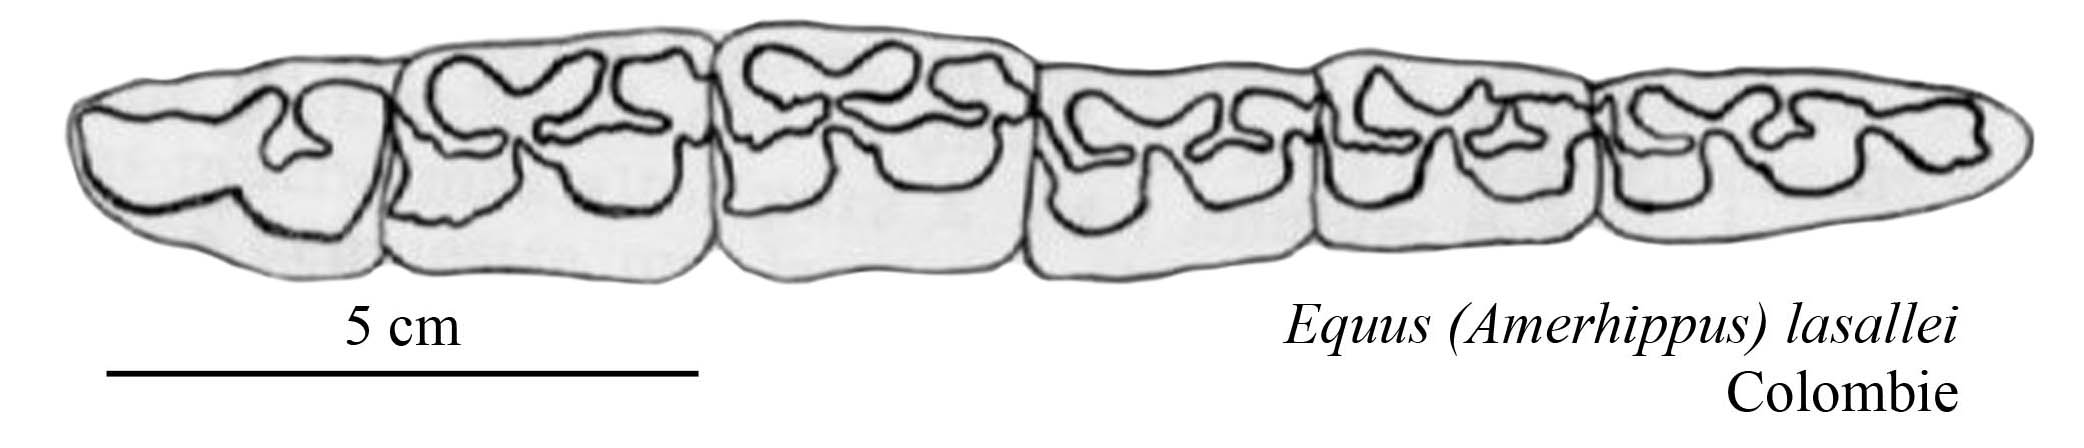 E. (A.) lasallei, Lower cheek teeth